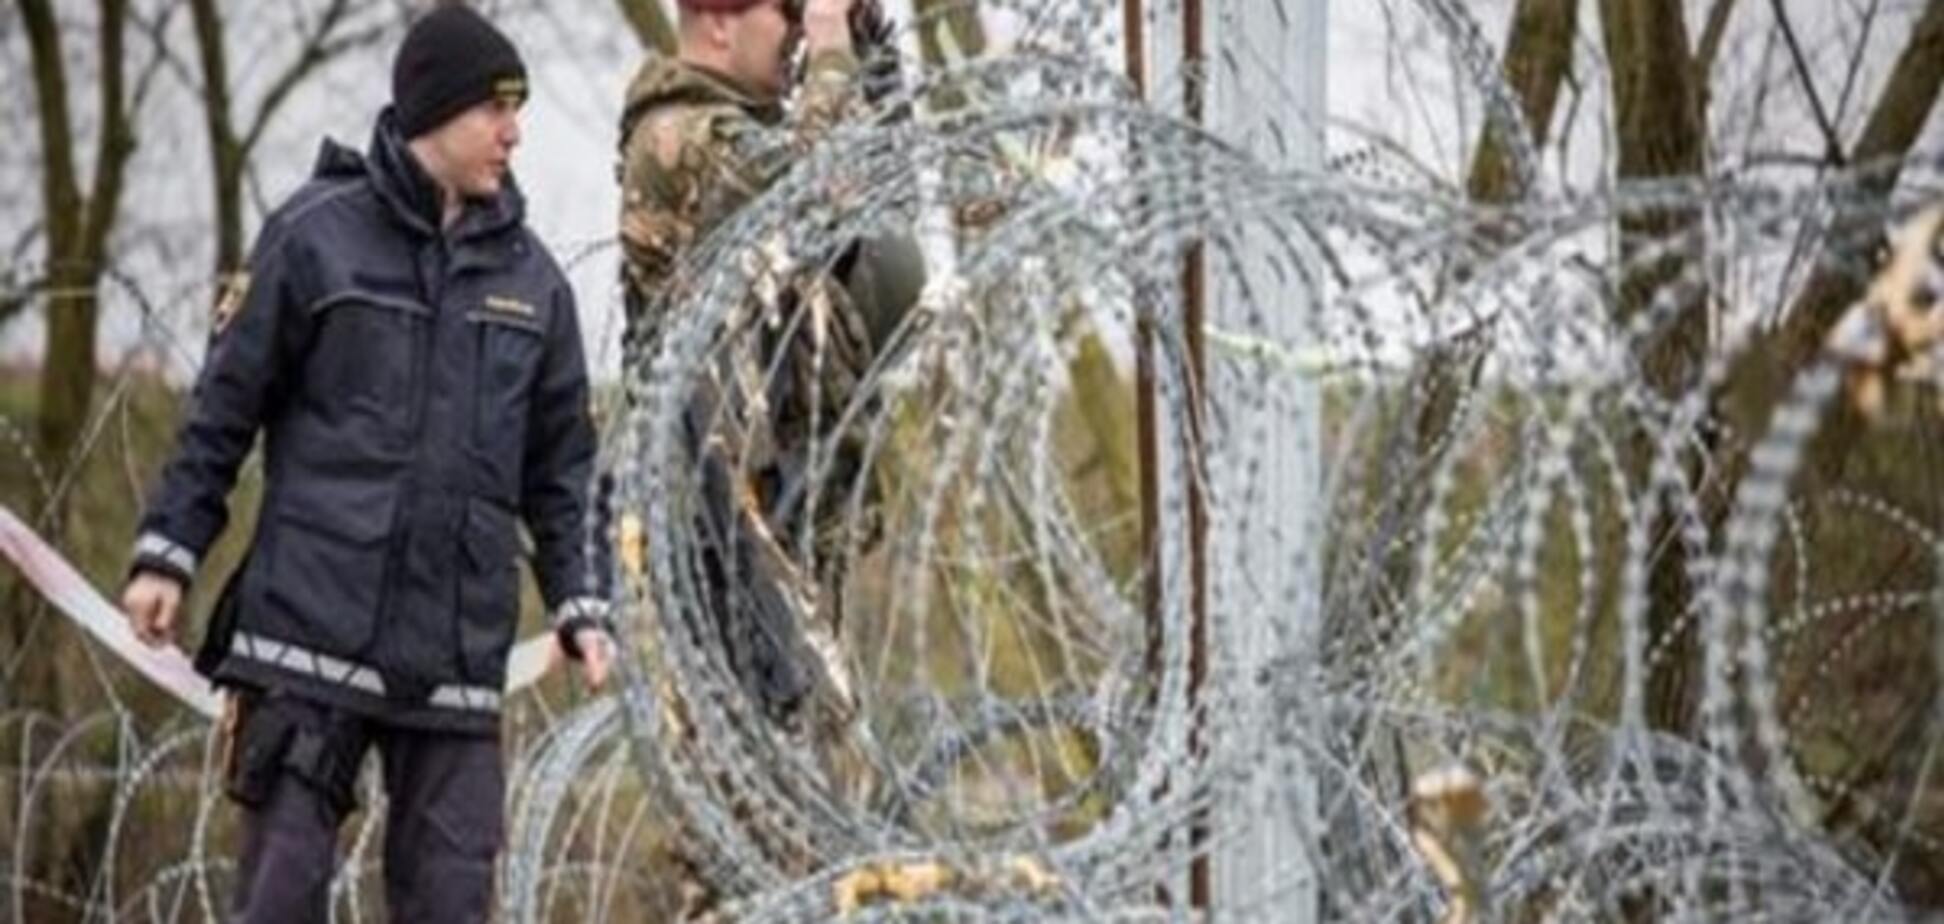 Словенія застосує армію для захисту кордонів через кризу біженців